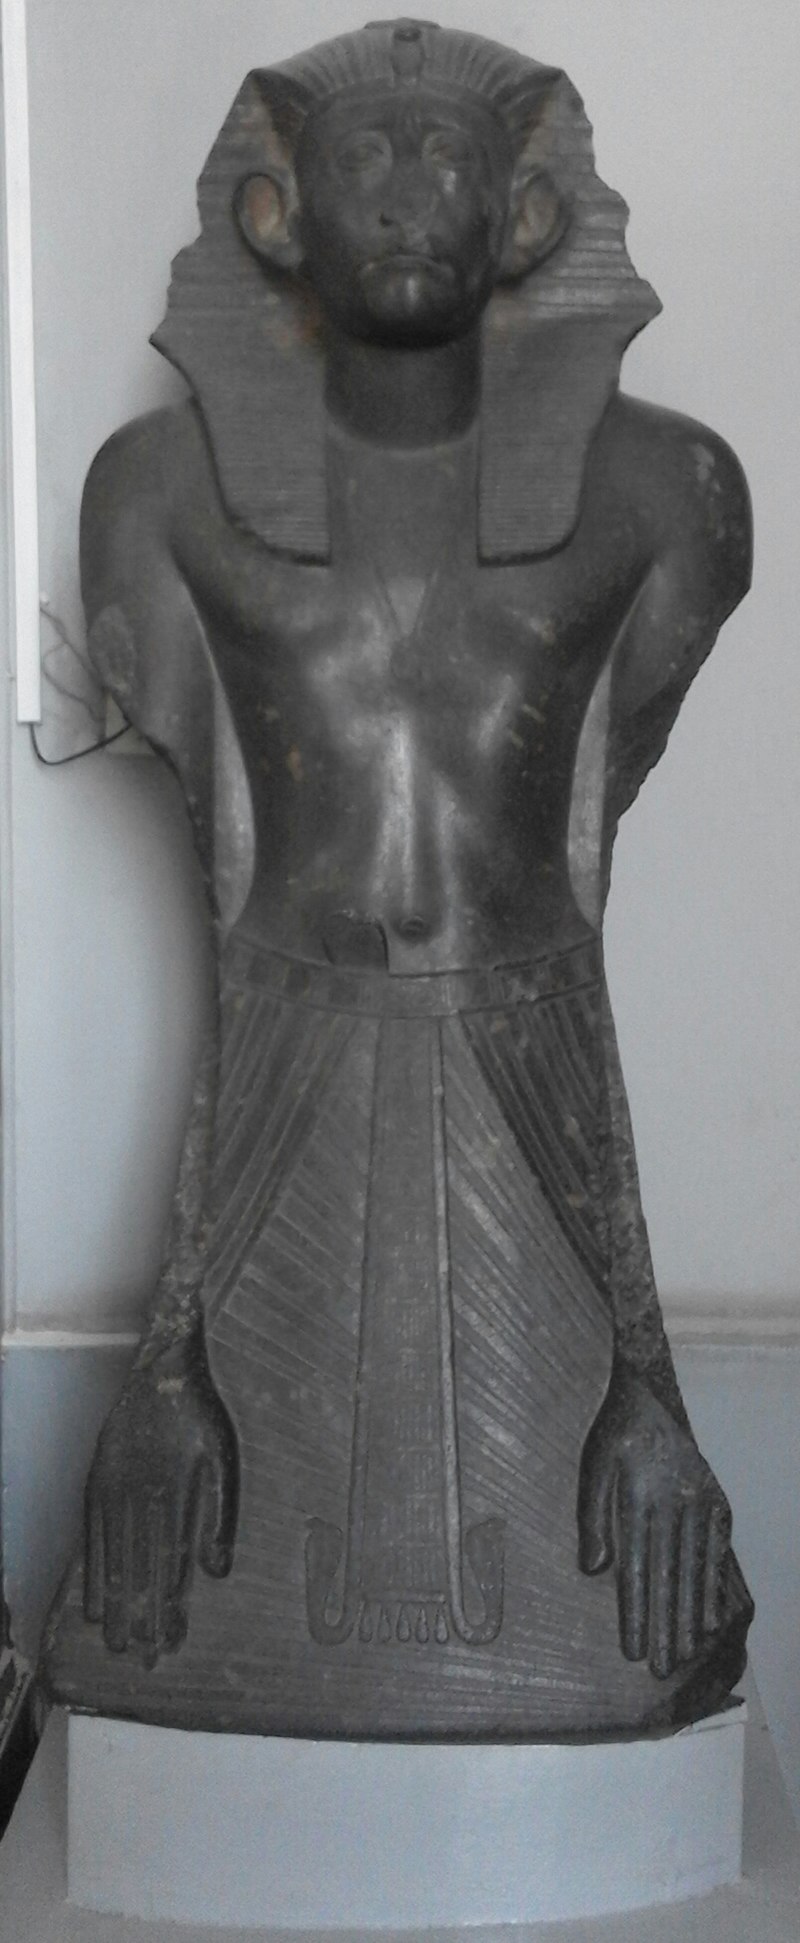 تمثال لسنوسرت الثالث في المتحف المصري